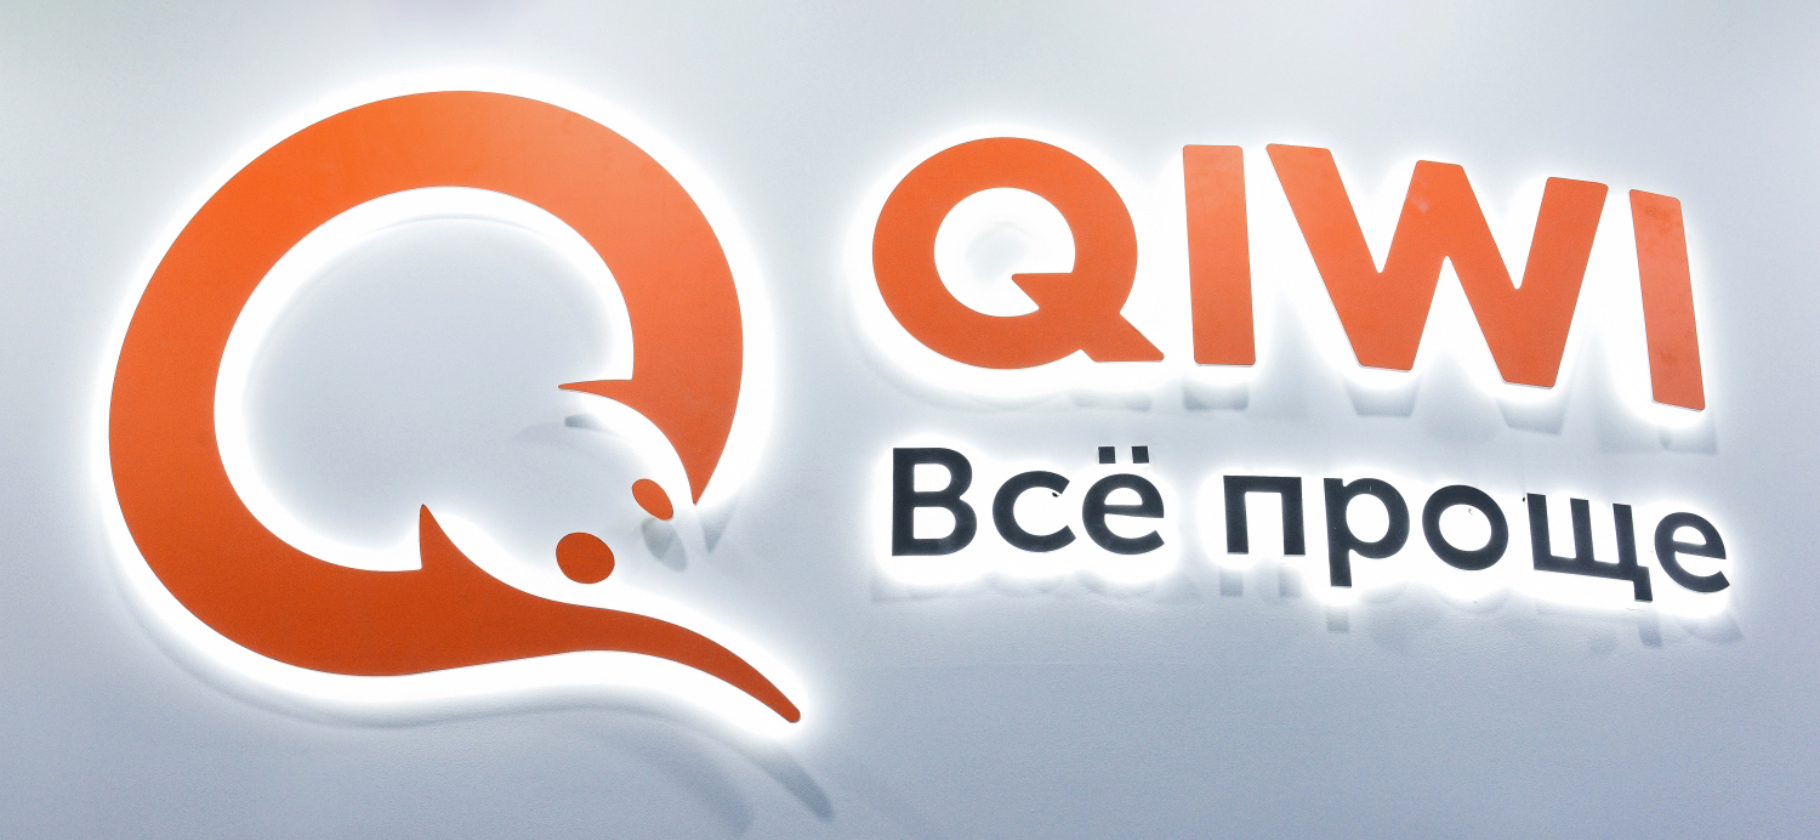 Электронный кошелек Qiwi Изображения – скачать бесплатно на Freepik